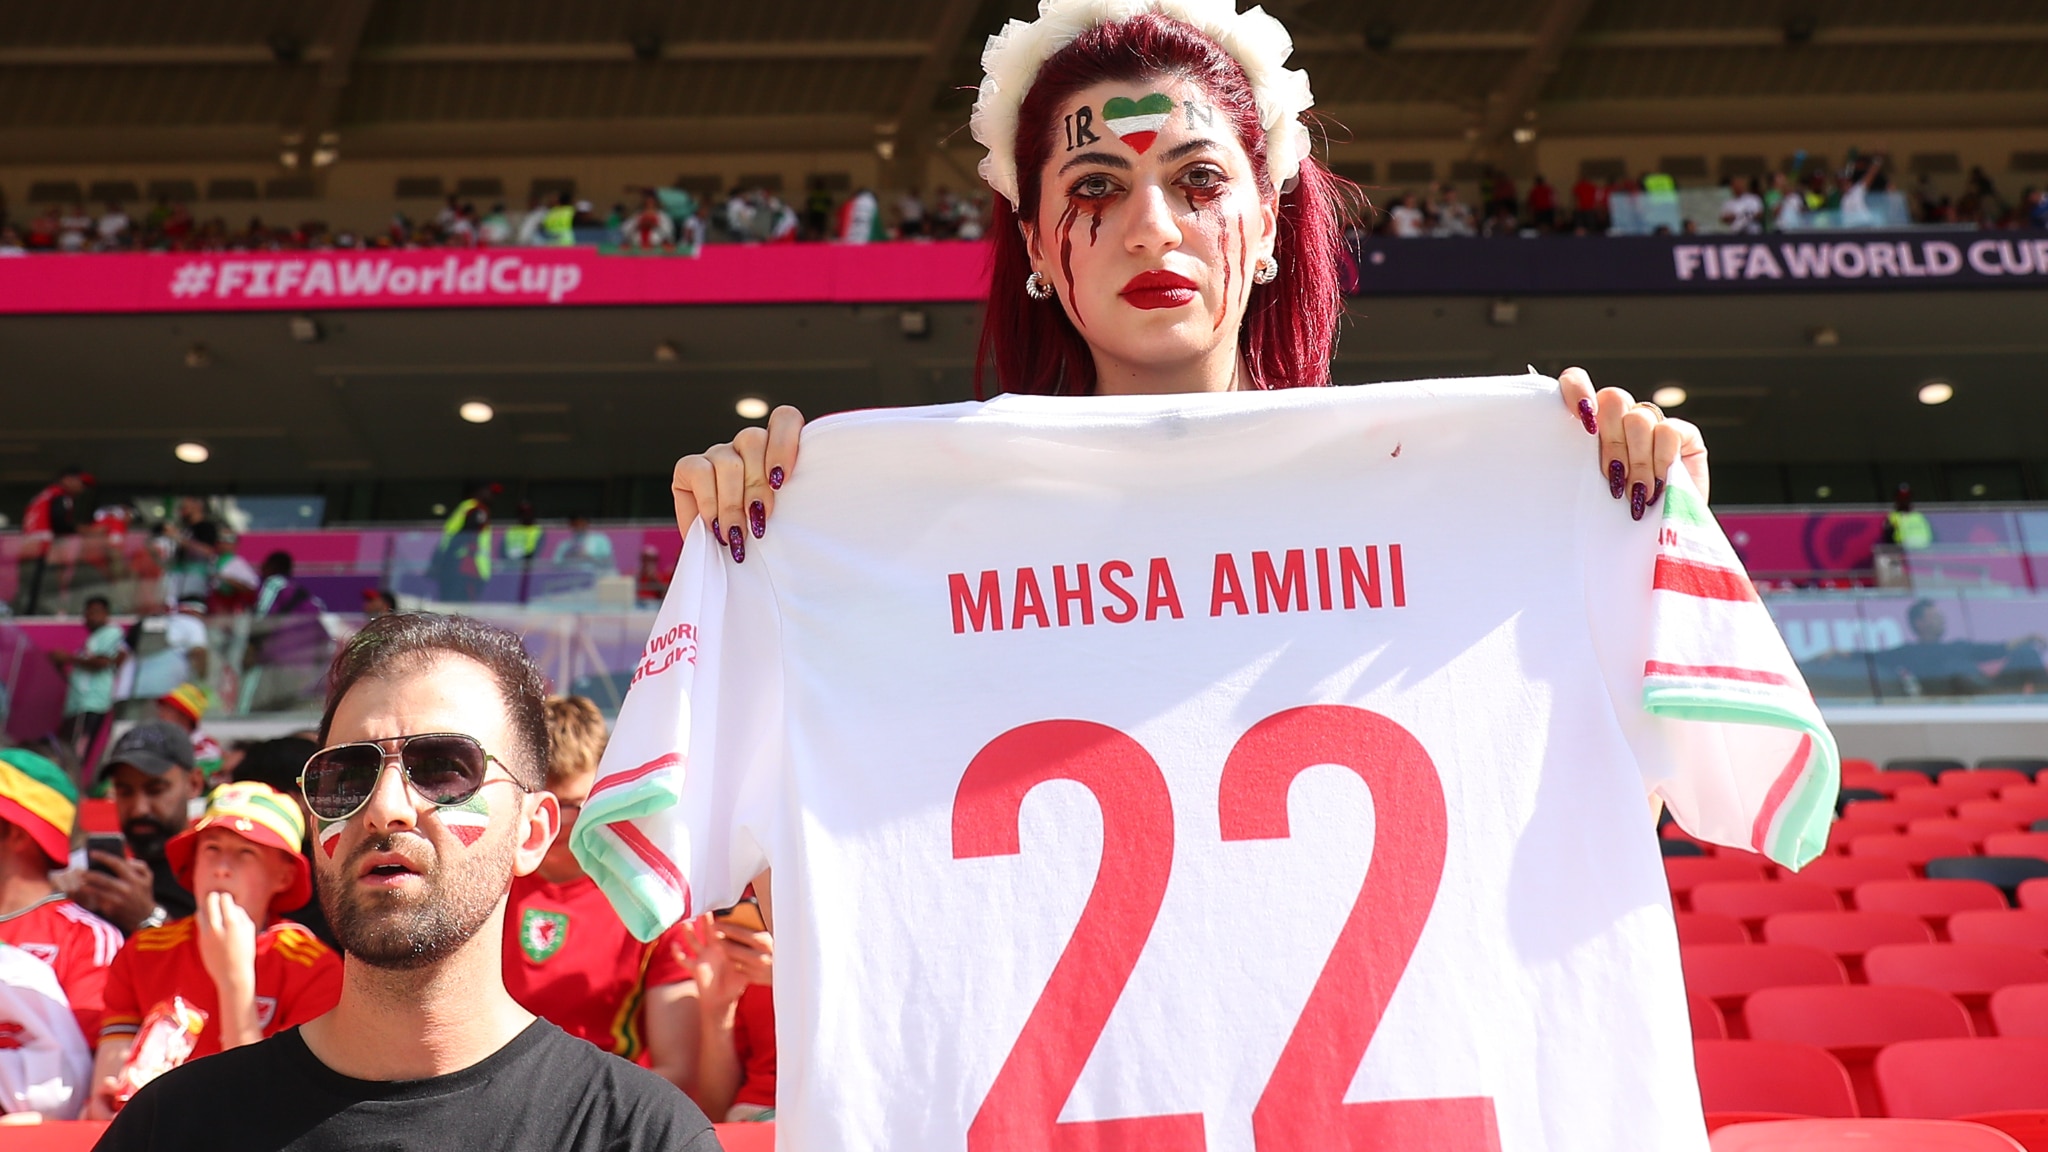 La tifosa dell'Iran allo stadio con la maglia "Mahsa Amini 22": la foto è virale